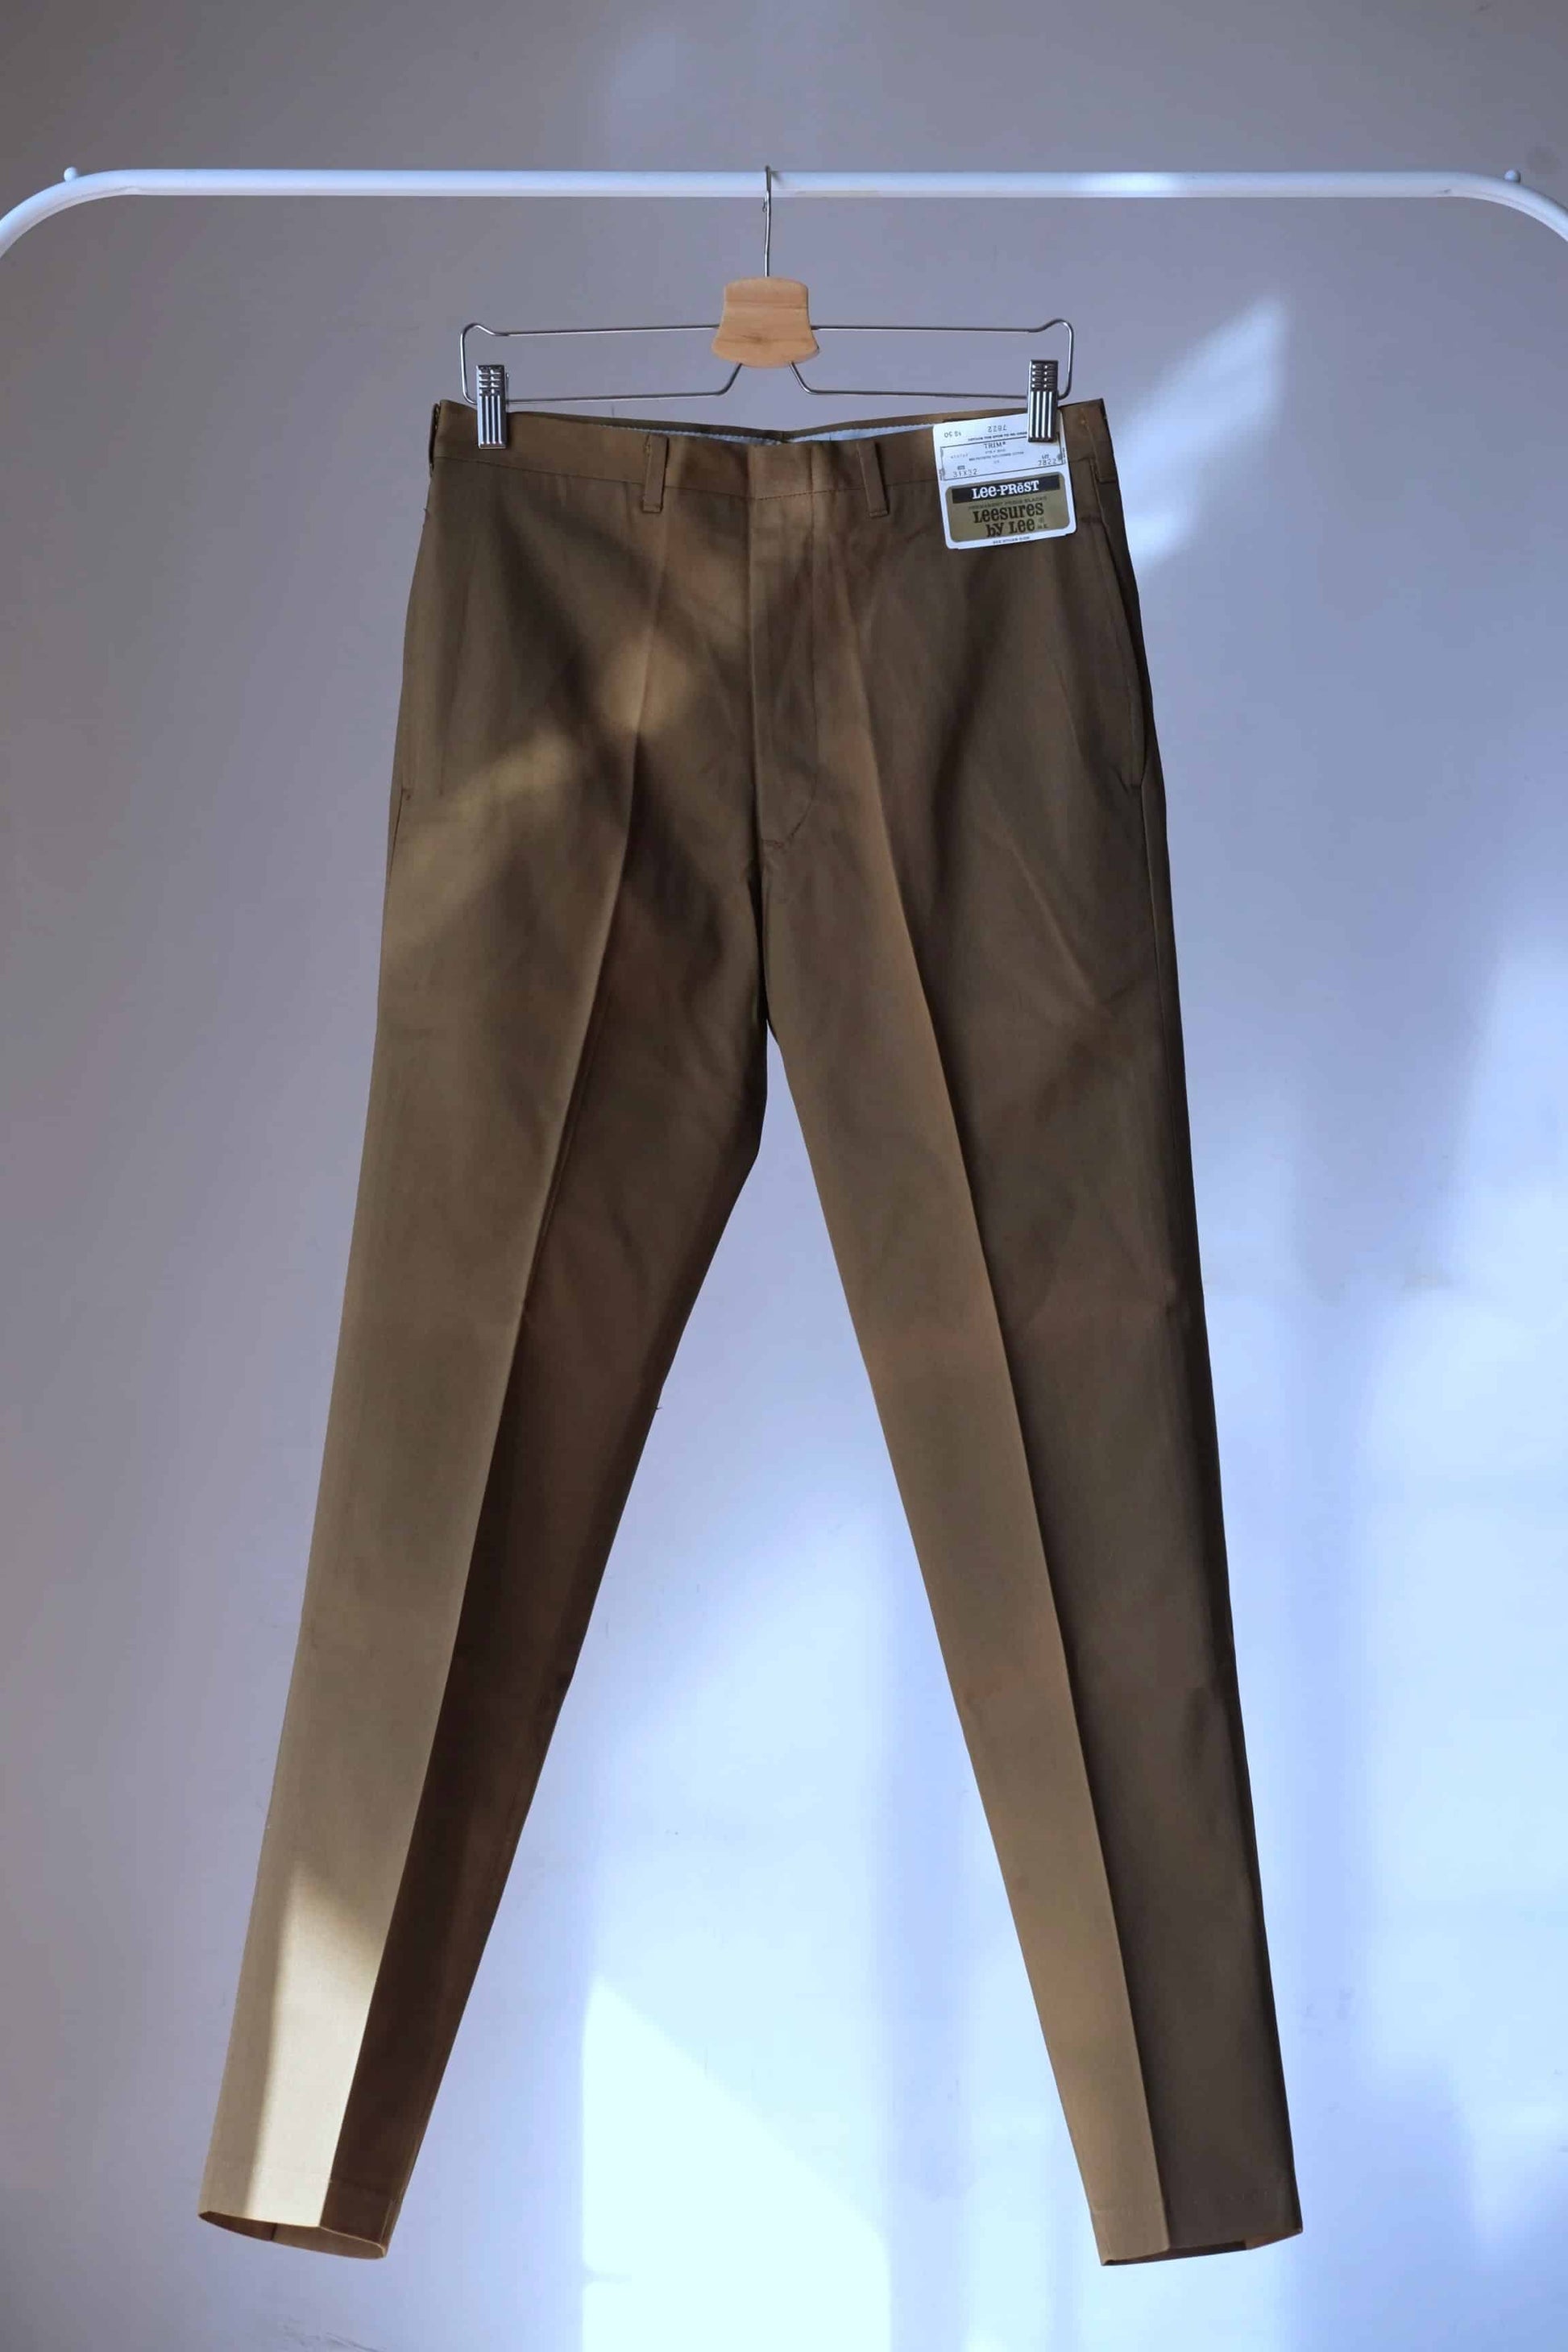 Vintage Lee Pants in brown on hanger